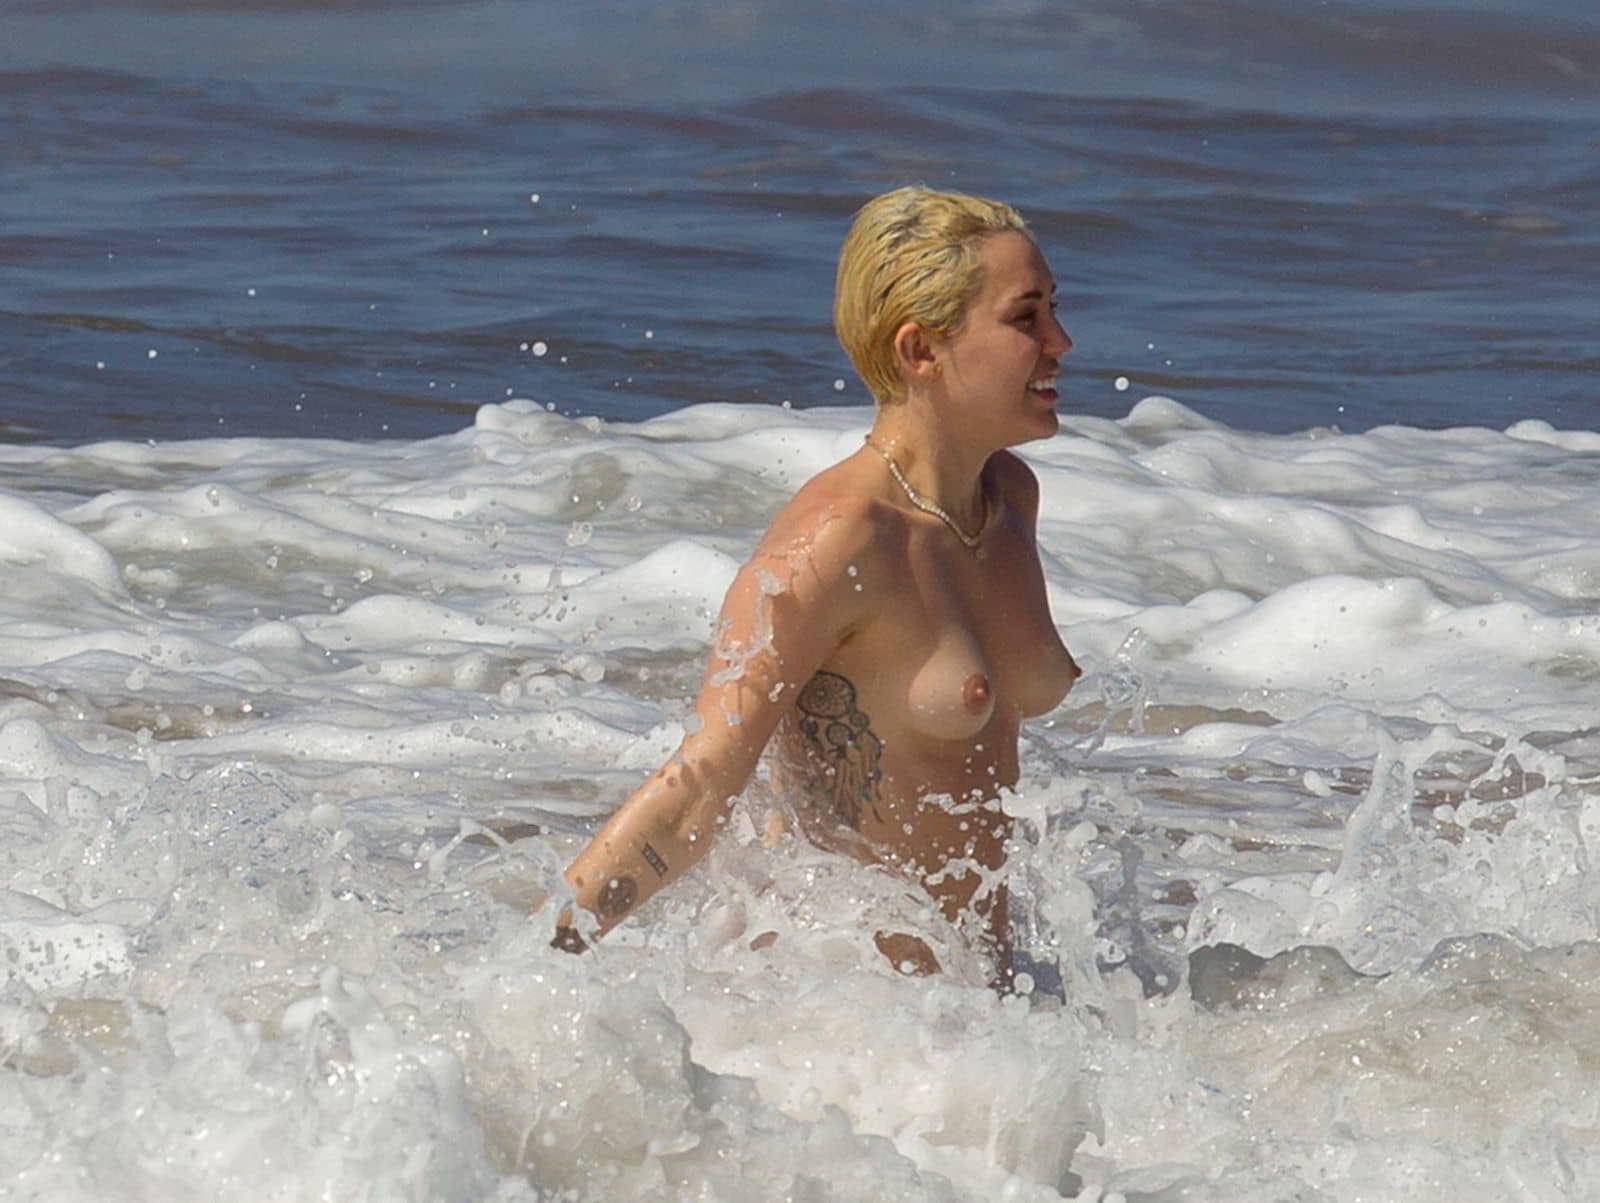 miley-cyrus-topless-bikini-candid-photos-in-hawaii-19.jpg